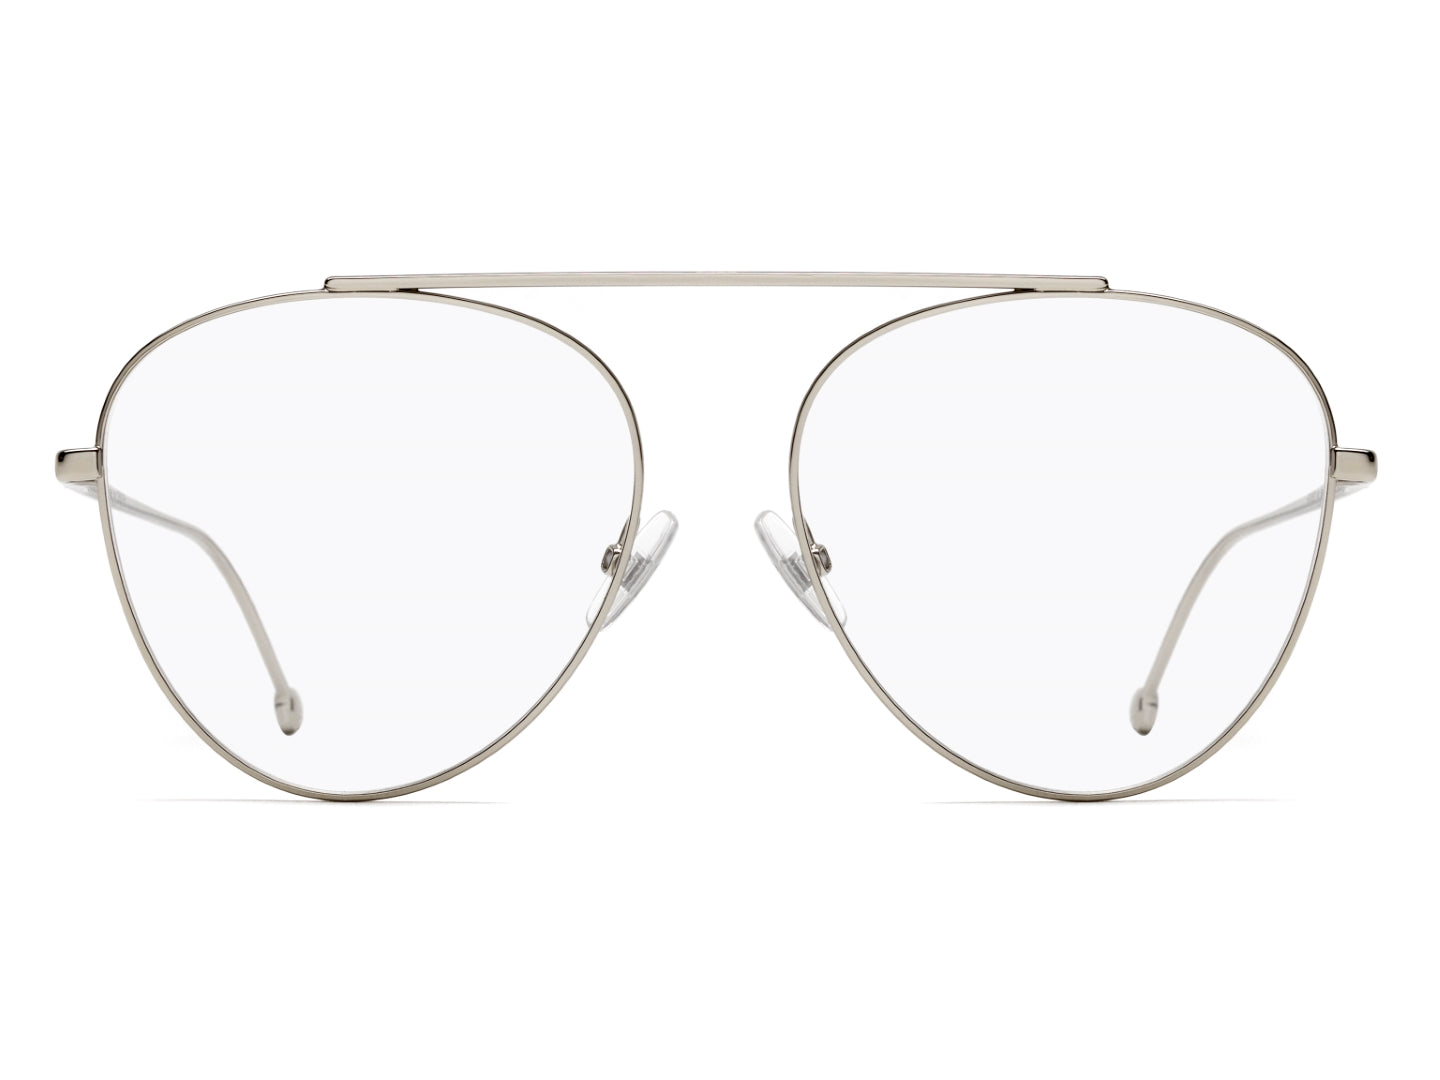 FENDI WOMAN PILOT Eyeglasses-FF 0352 Size 56